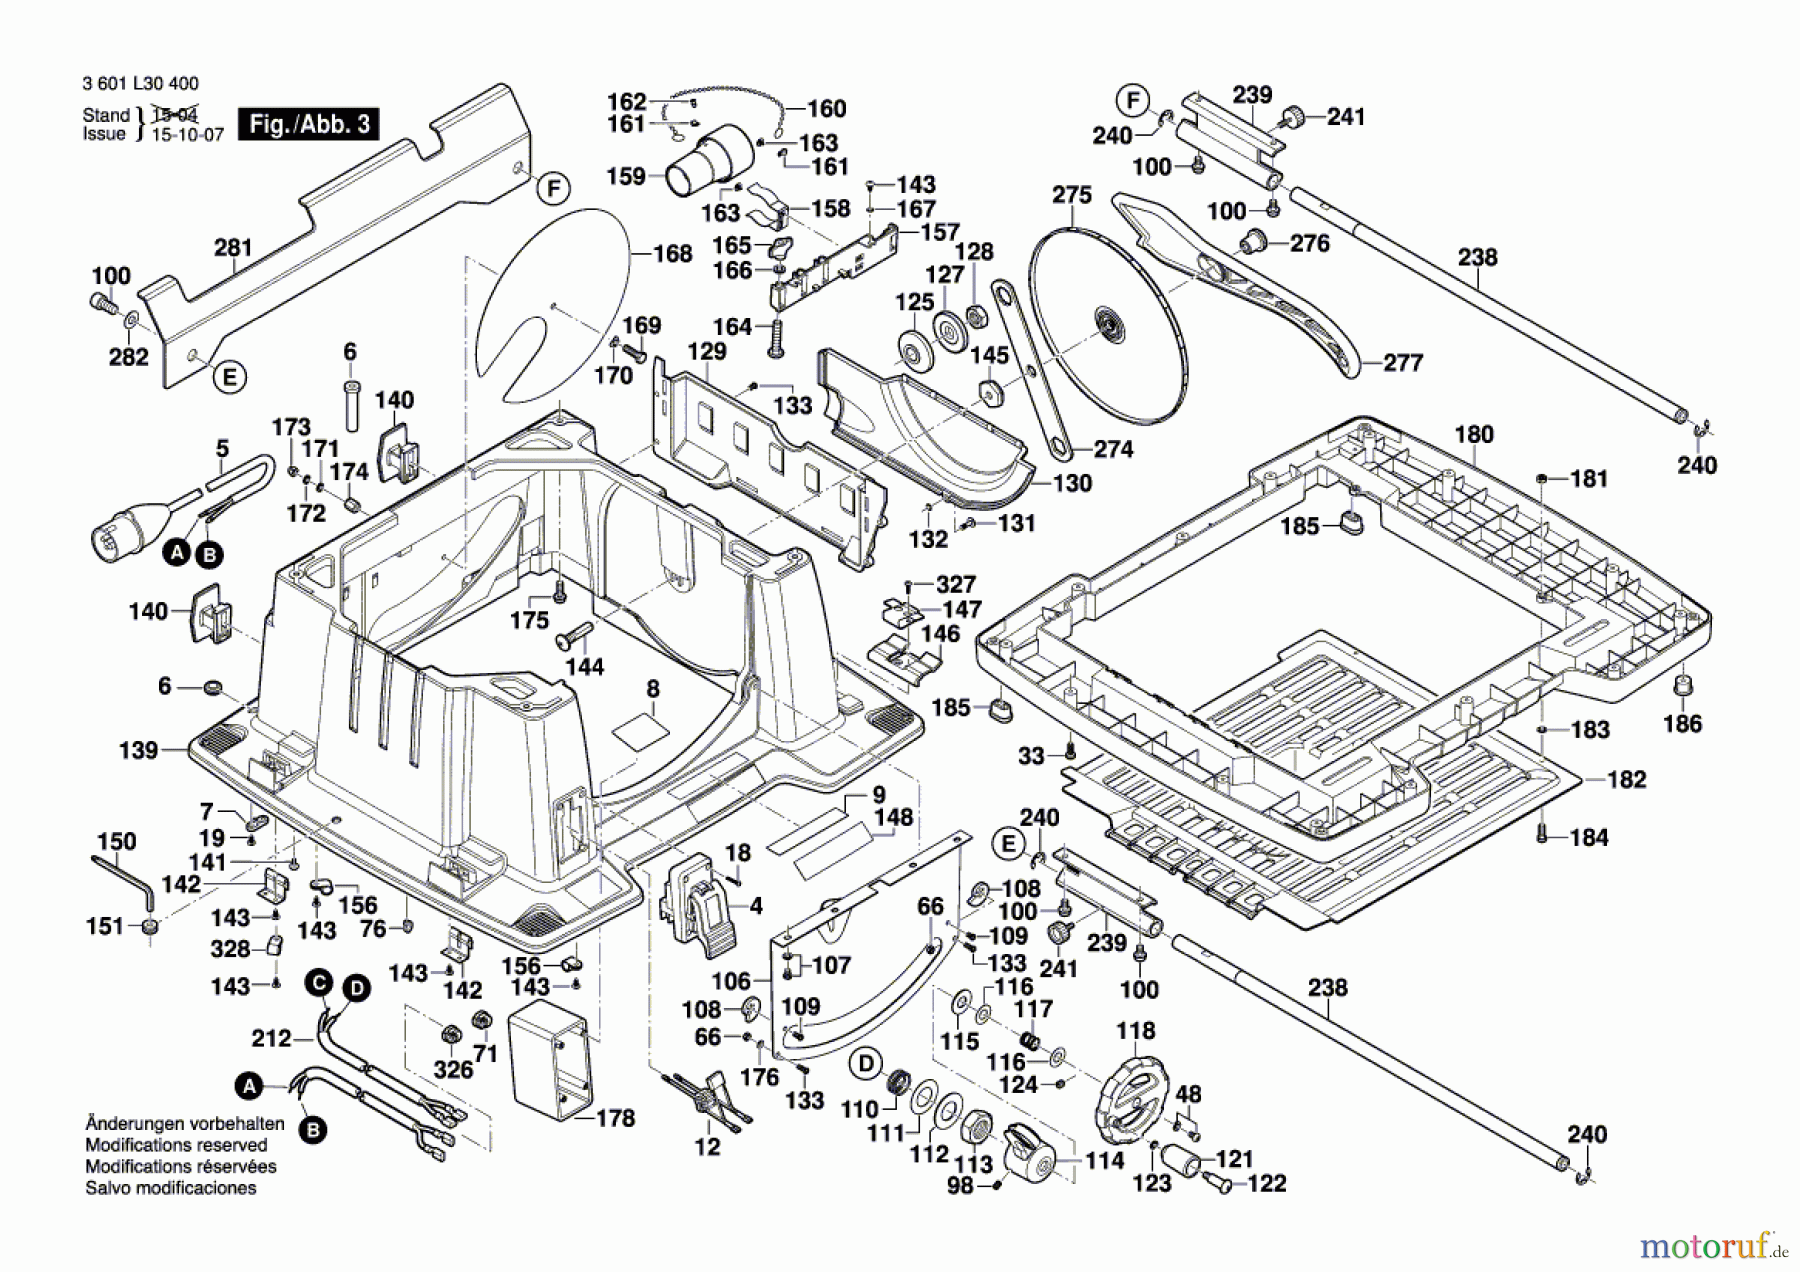  Bosch Werkzeug Tischkreissäge GTS 10 XC Seite 3